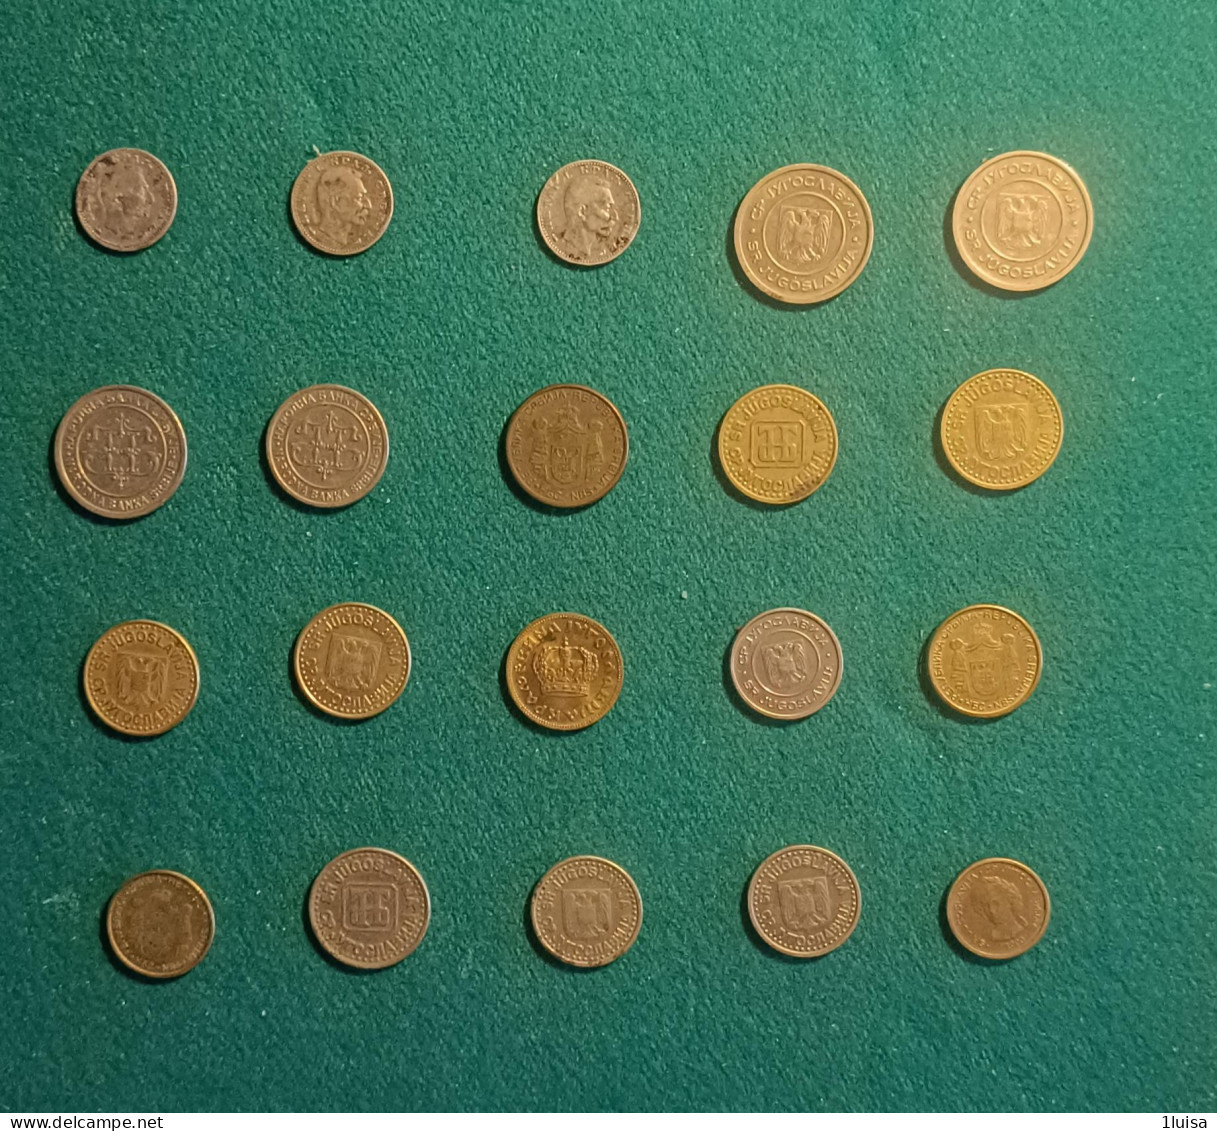 SERBIA 20 Monete Originali Differenti Per Data - Serbia